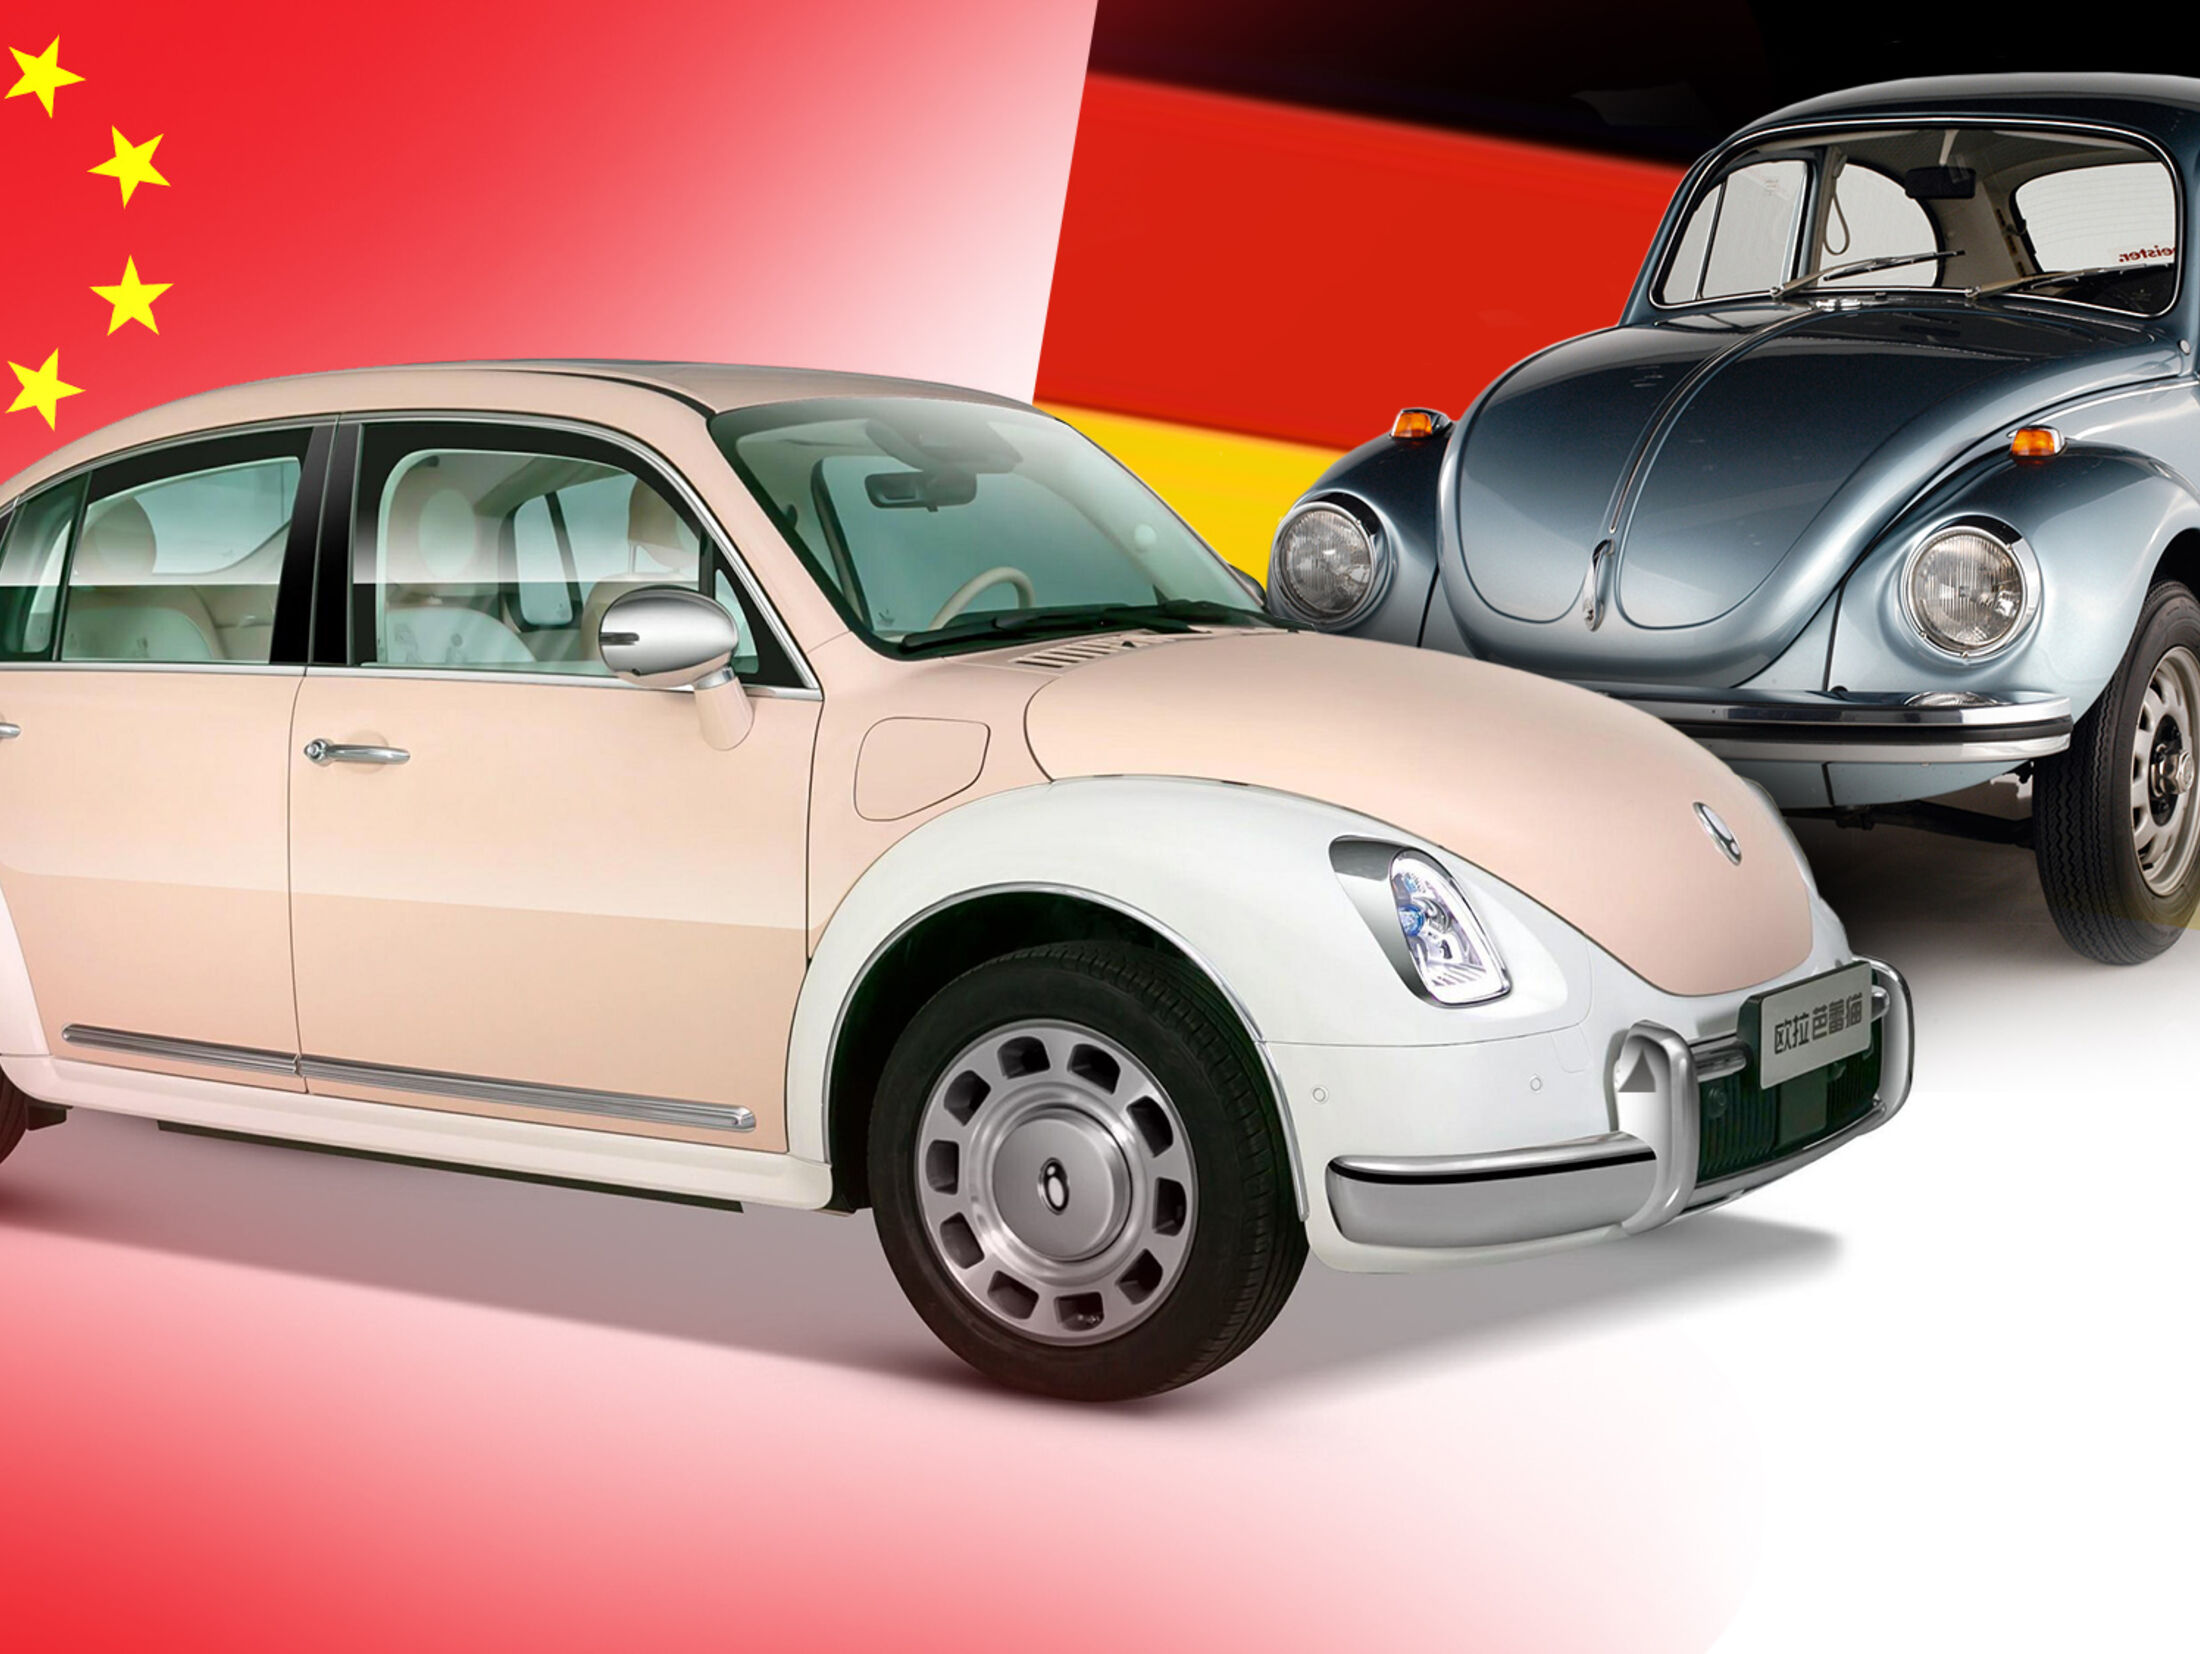 VW prüft rechtliche Schritte: Neuer Käfer-Klon aus China